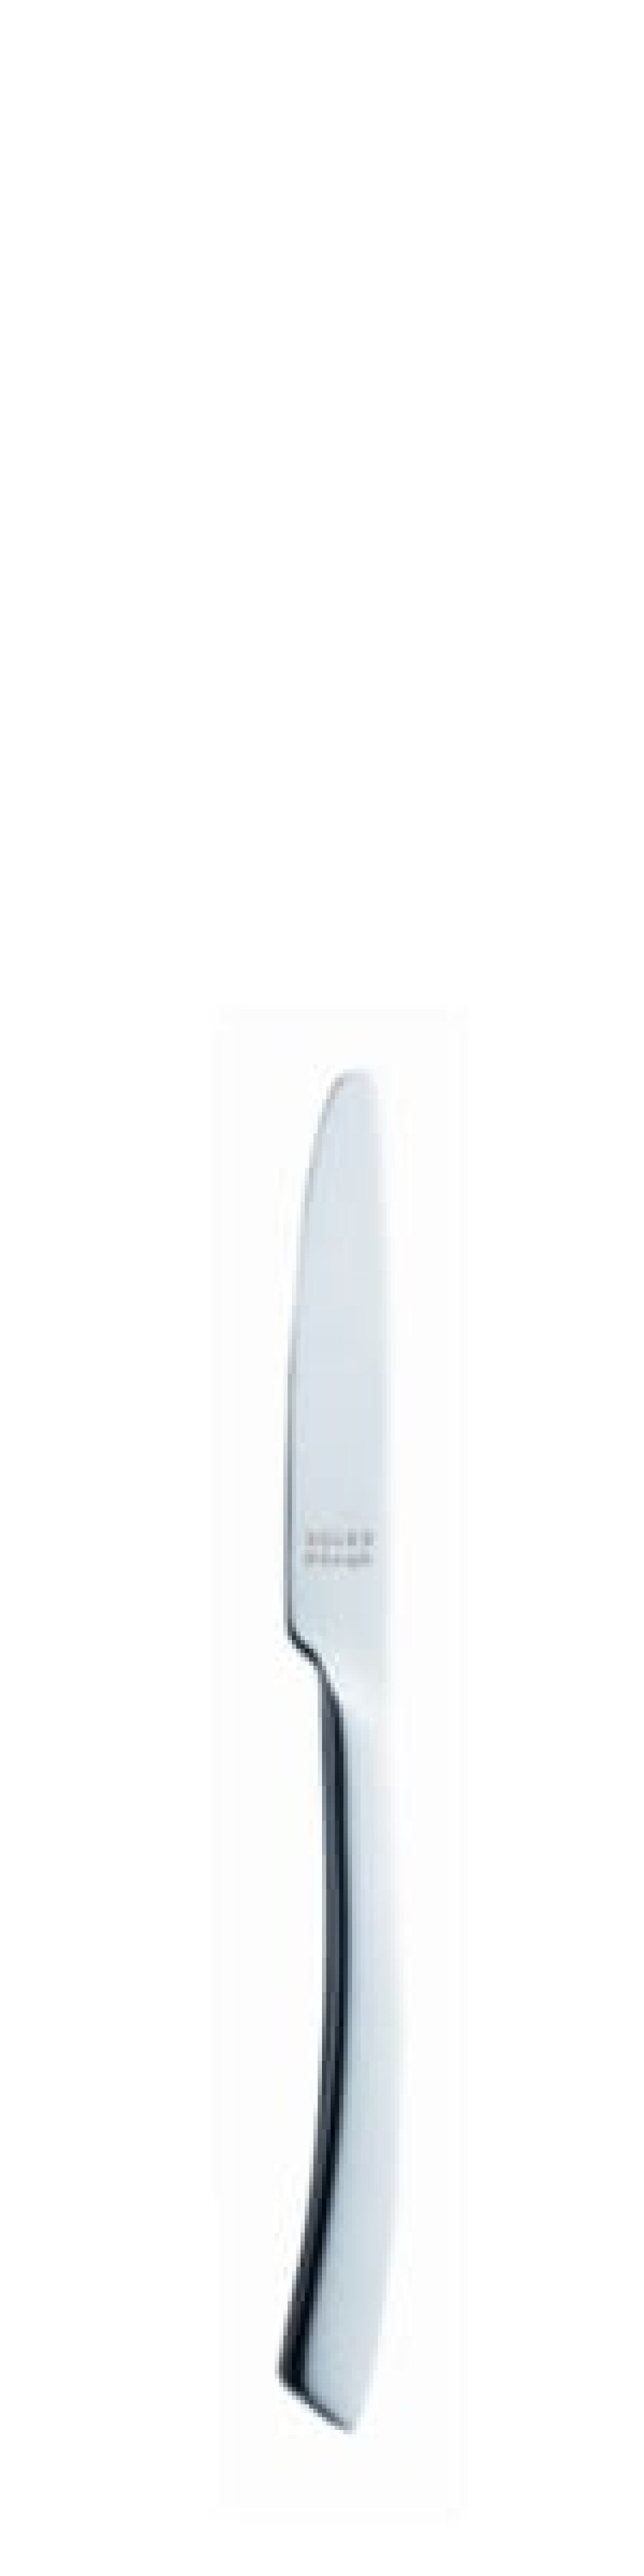 Nóż do masła Sophia 170 mm - Solex w grupie Nakrycie stołu / Sztućce / Noże do masła w The Kitchen Lab (1284-21584)